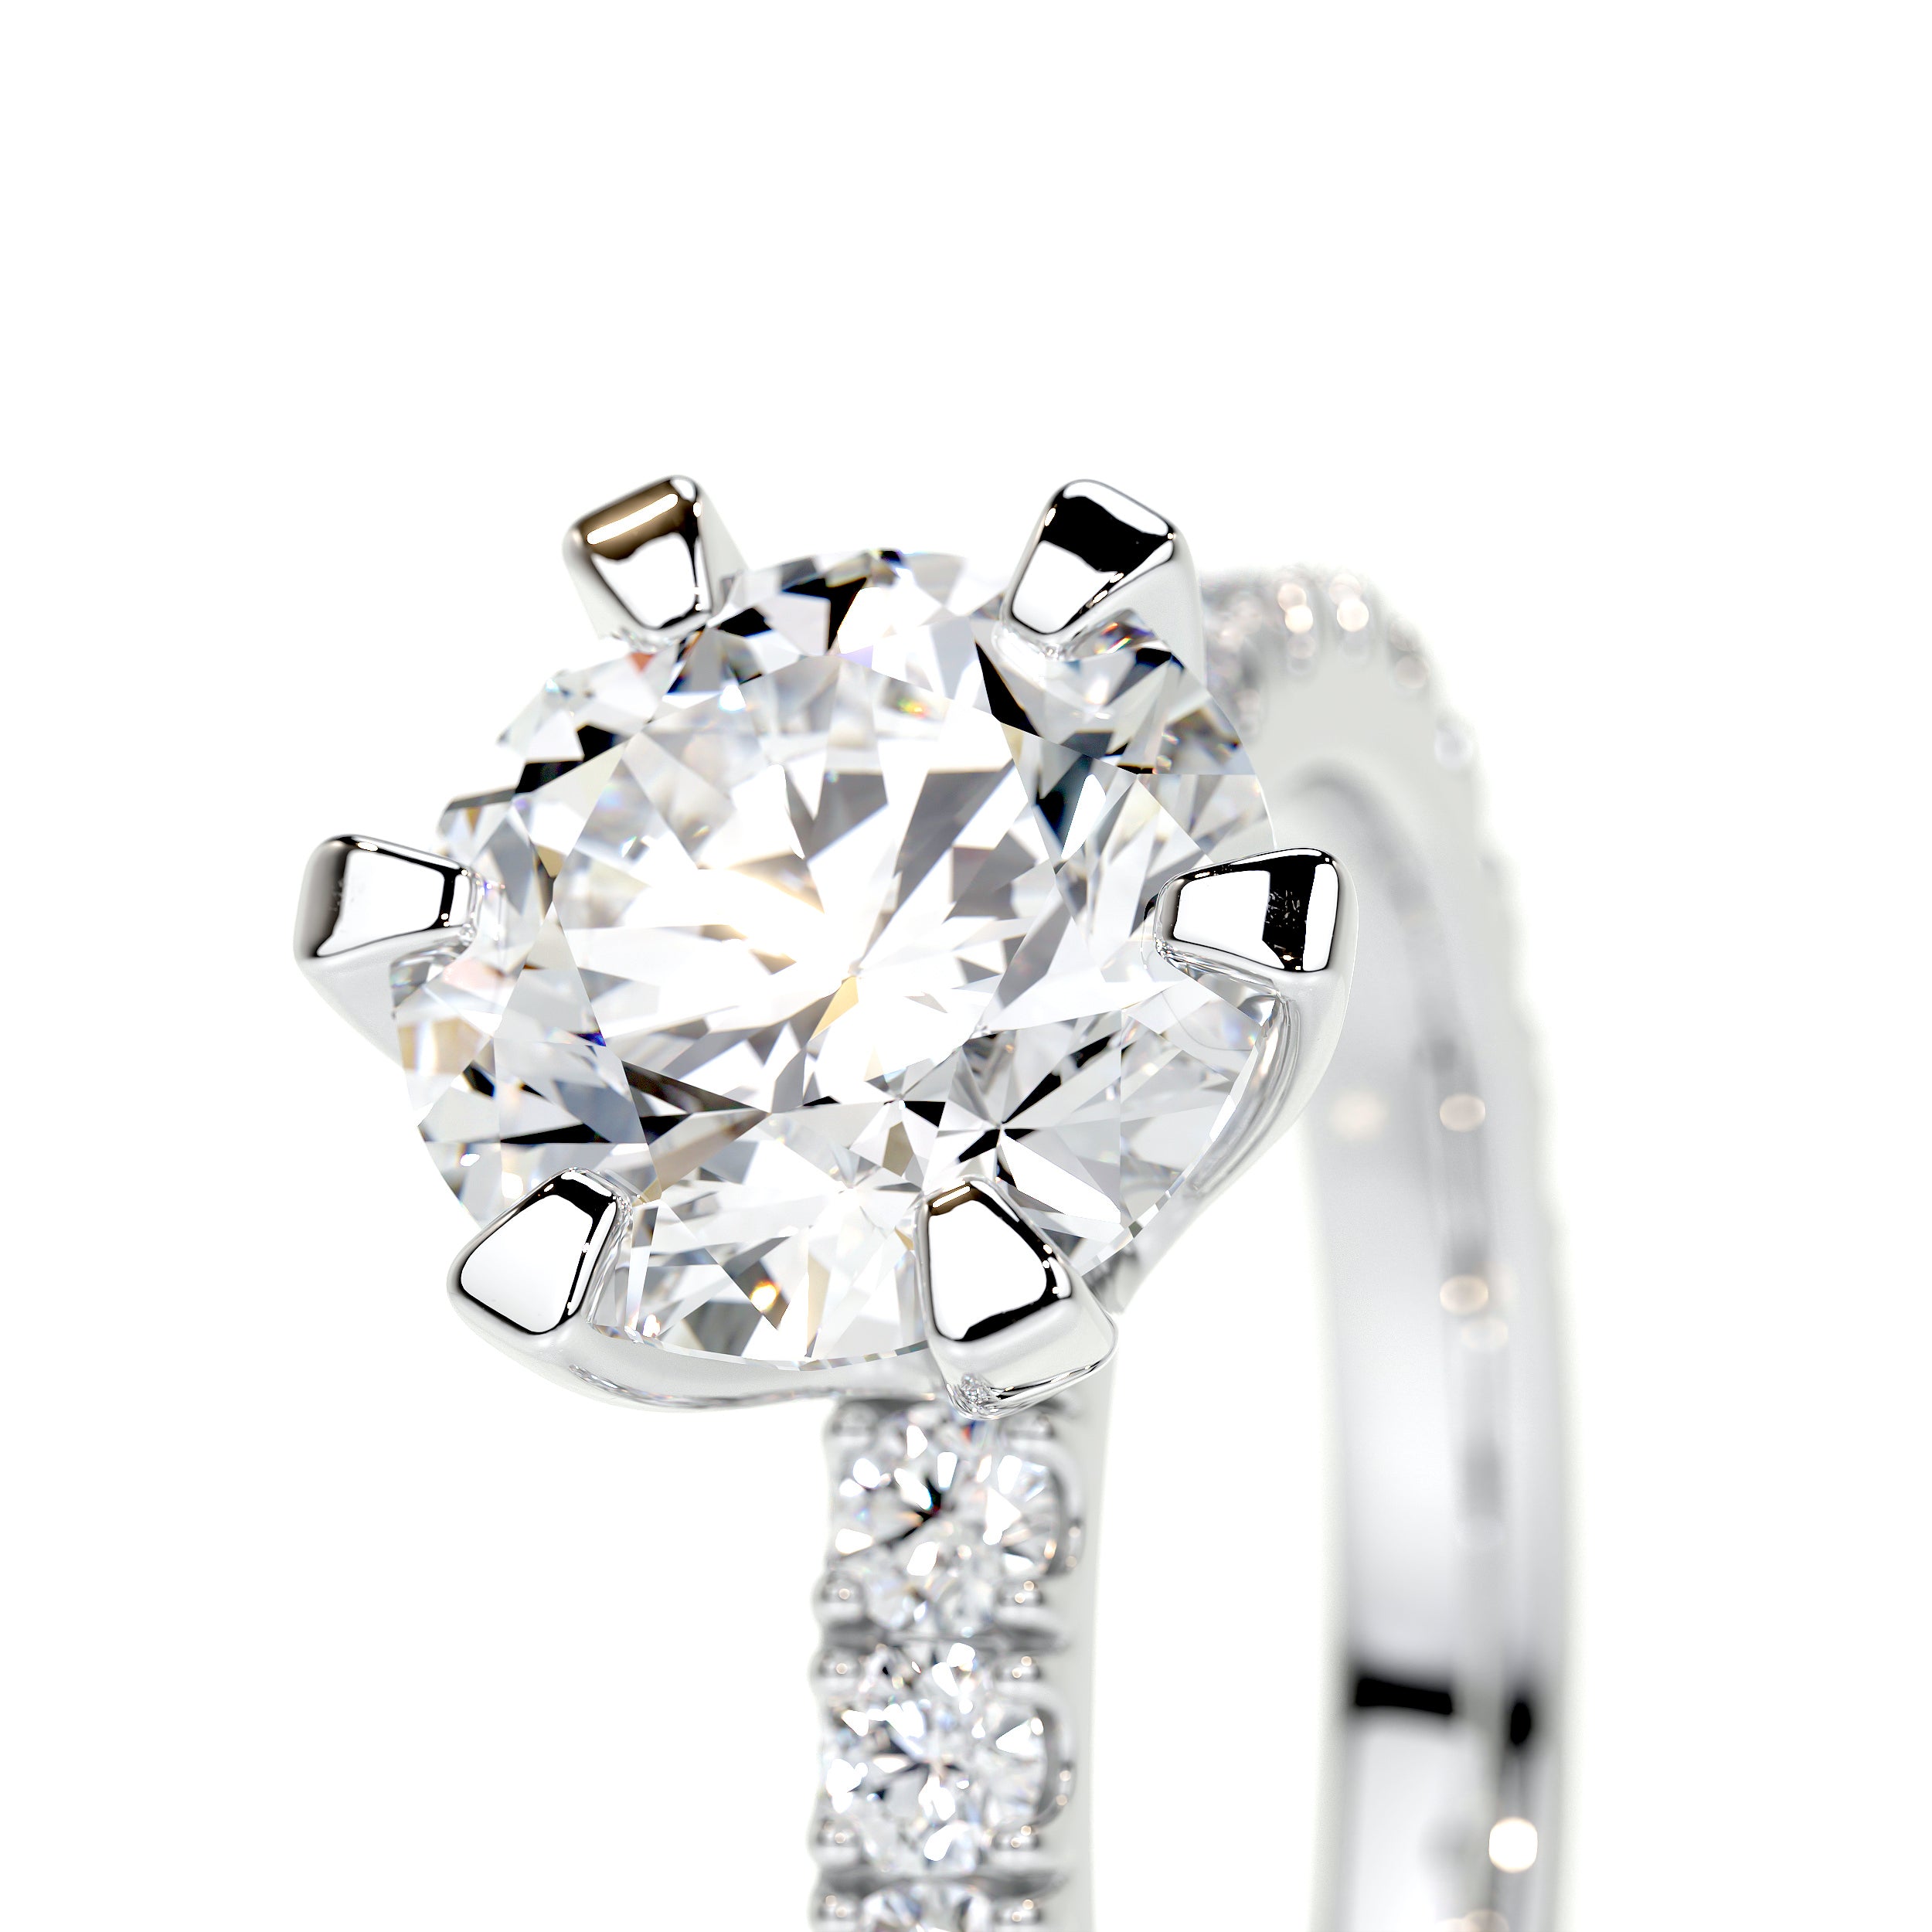 Veronica Lab Grown Diamond Ring   (2 Carat) -14K White Gold